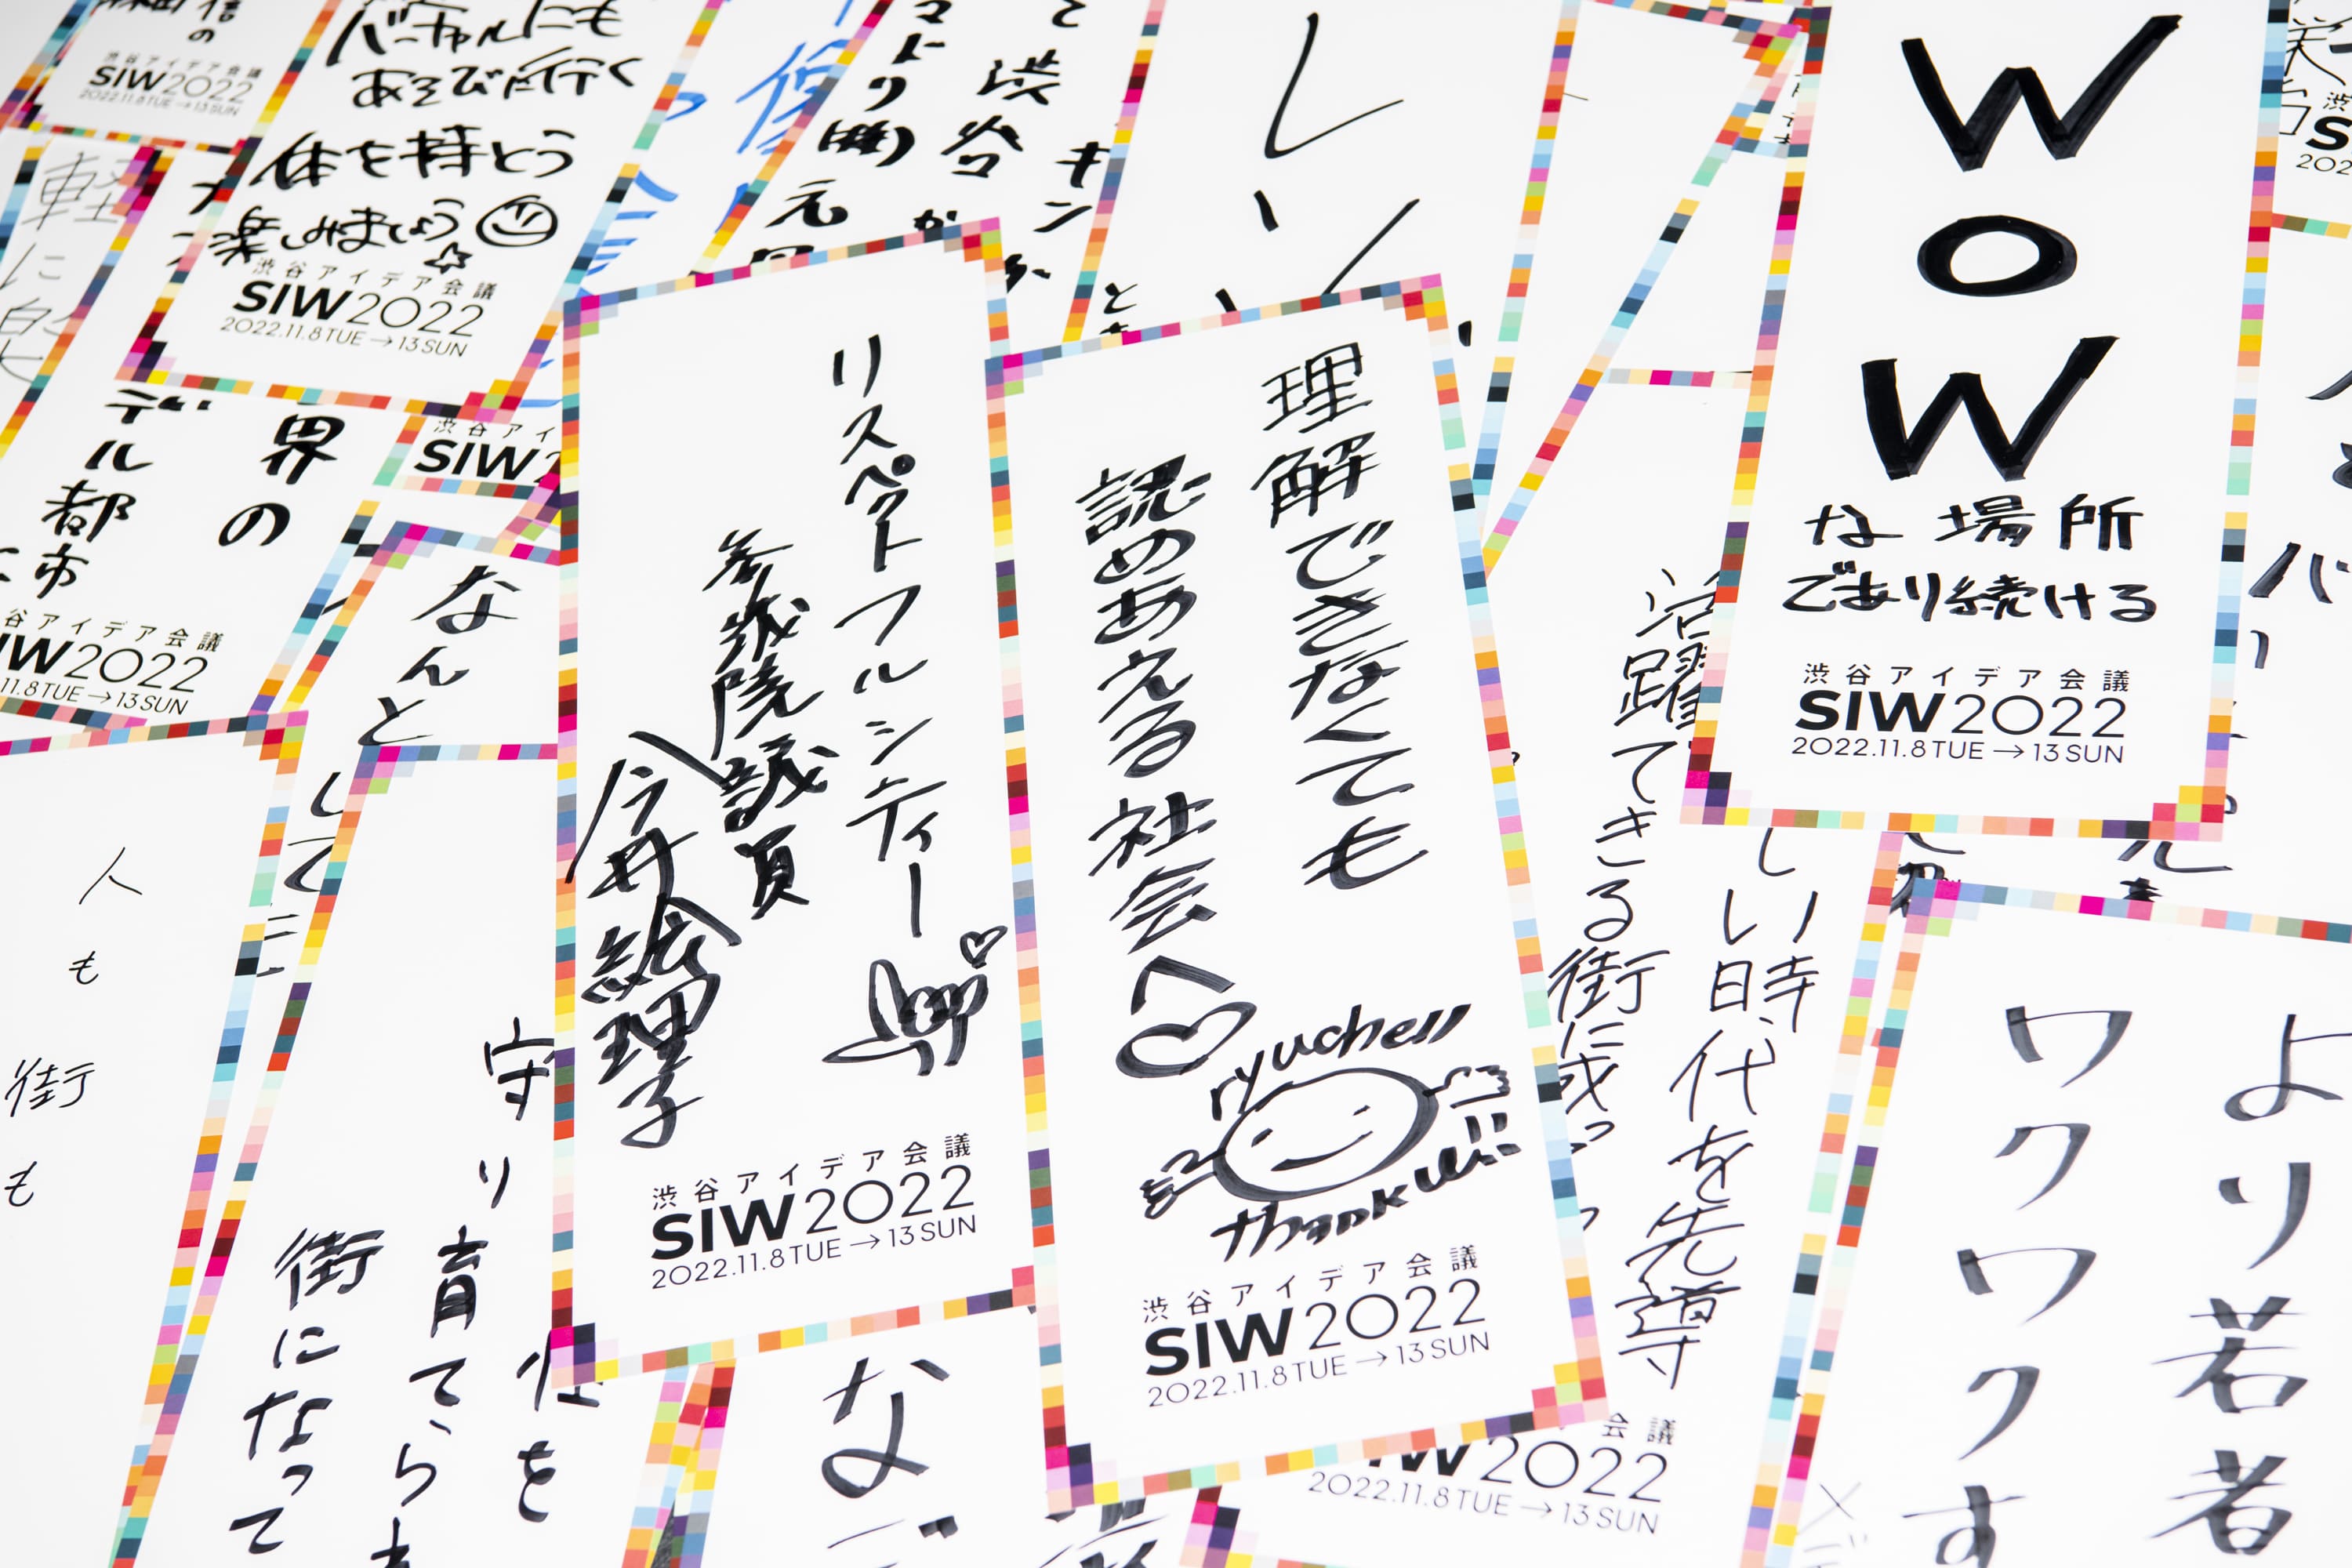 SAI6836-1 延べ13万人が参加 ！渋谷アイデア会議「SIW2022」が閉幕。80プログラムのアーカイブを無料公開中